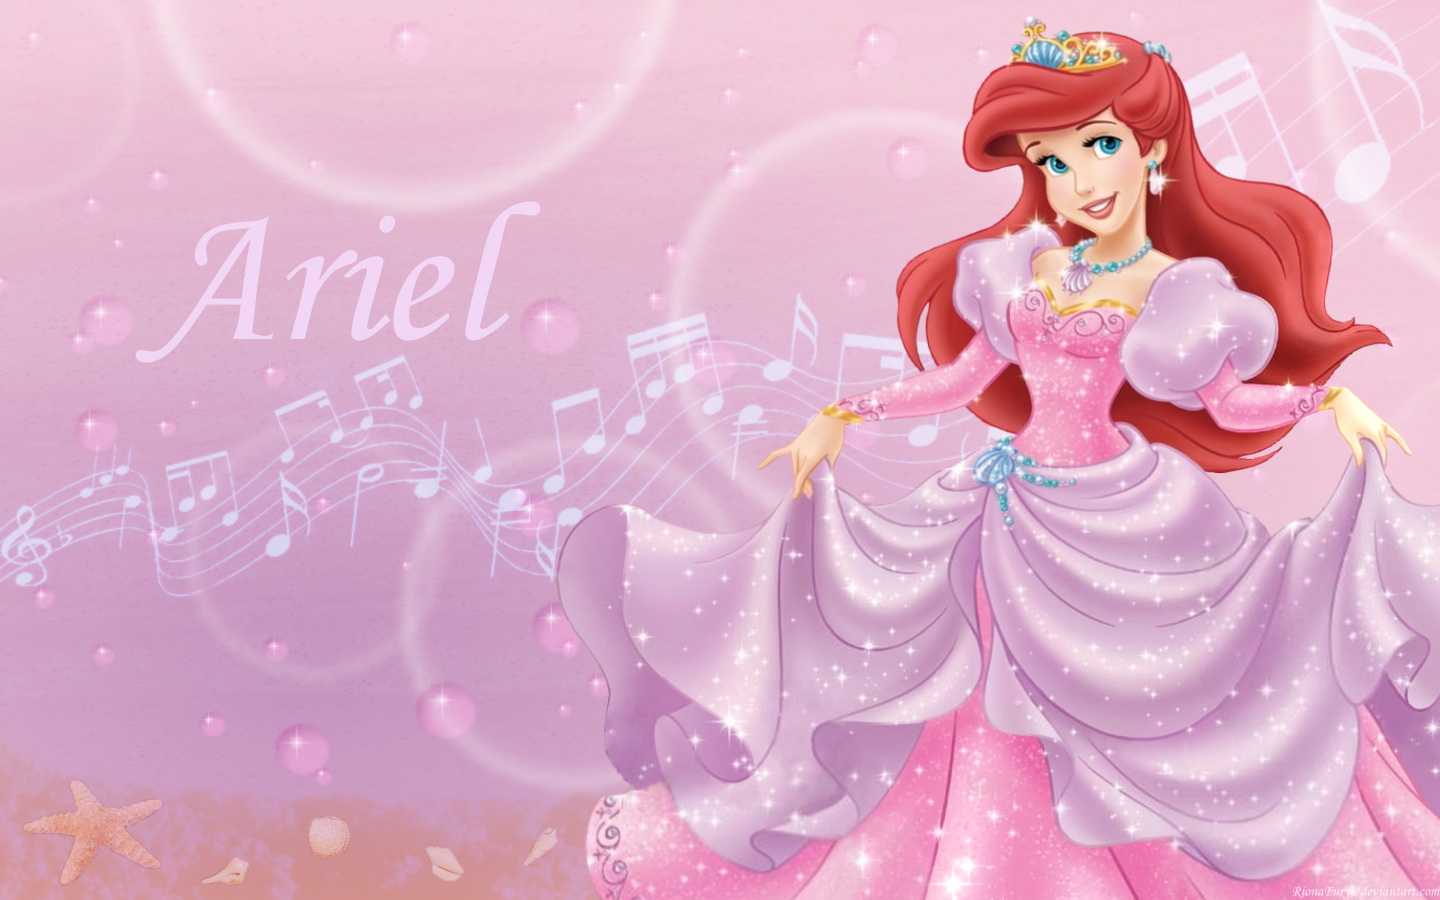 Ariel In Berwarna Merah Muda, Merah Muda - Ariel Little Mermaid Pink - HD Wallpaper 